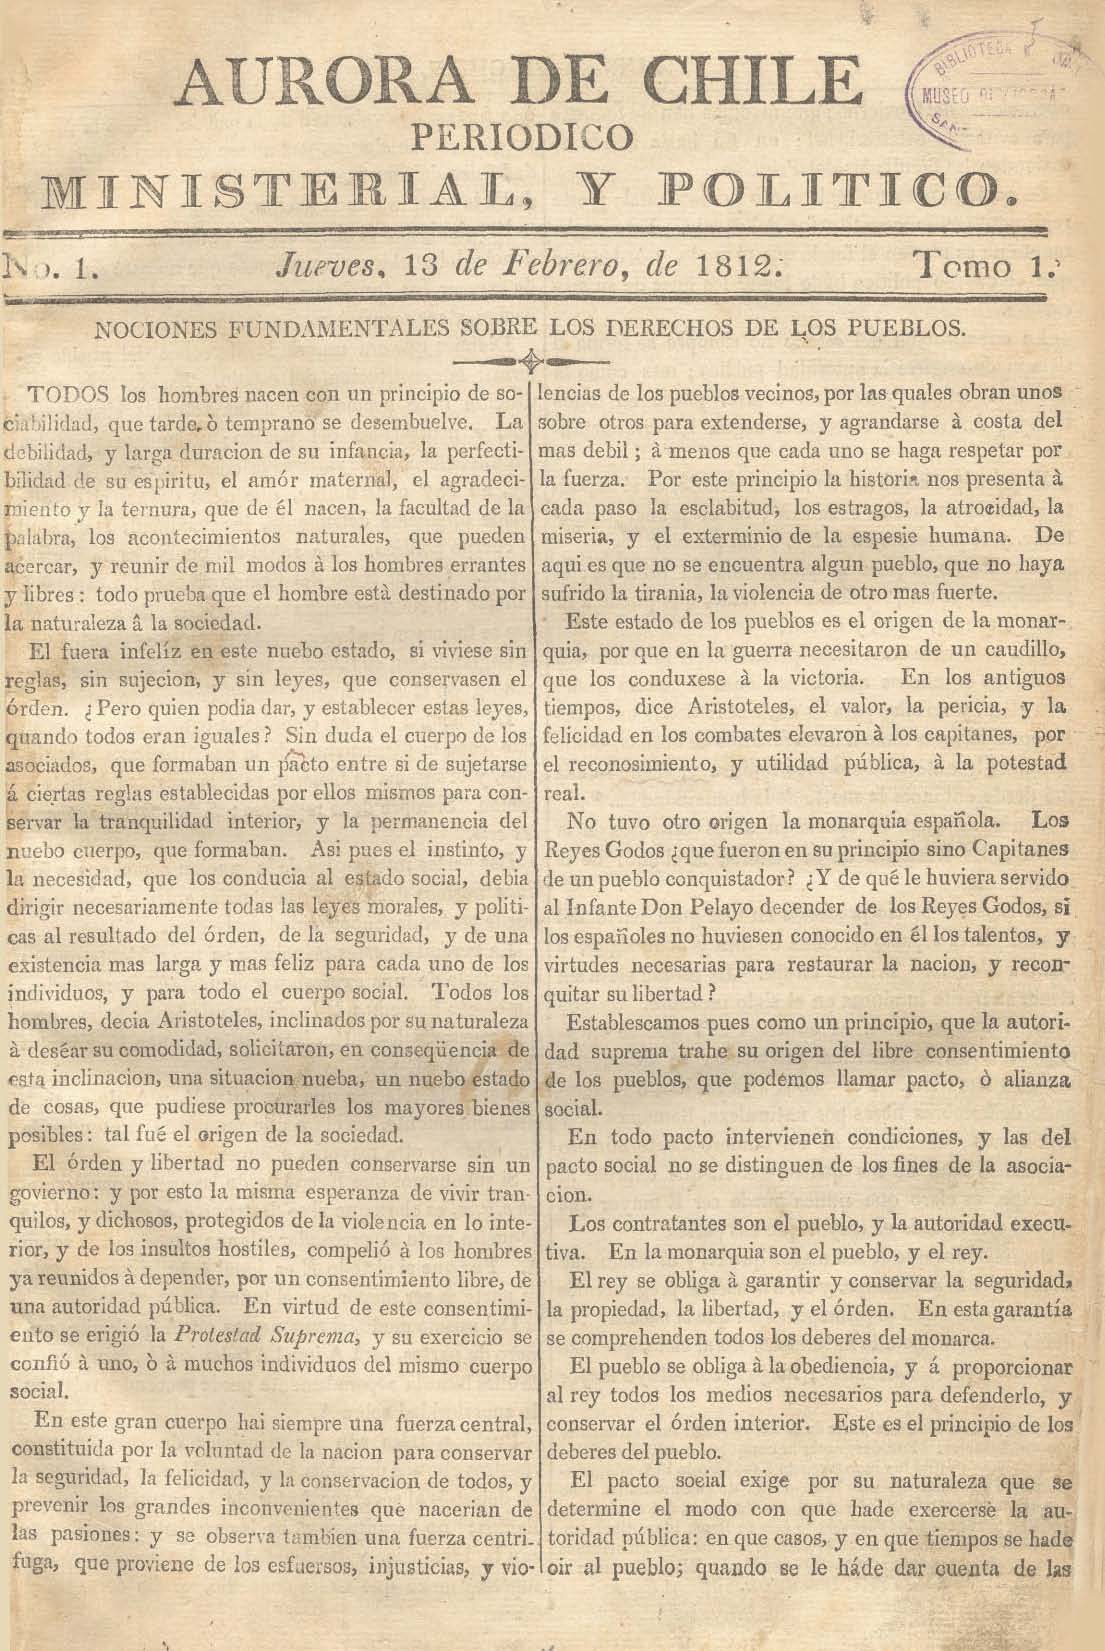 							Ver 1813: Suplemento, Tomo II. Jueves 11 de Marzo
						